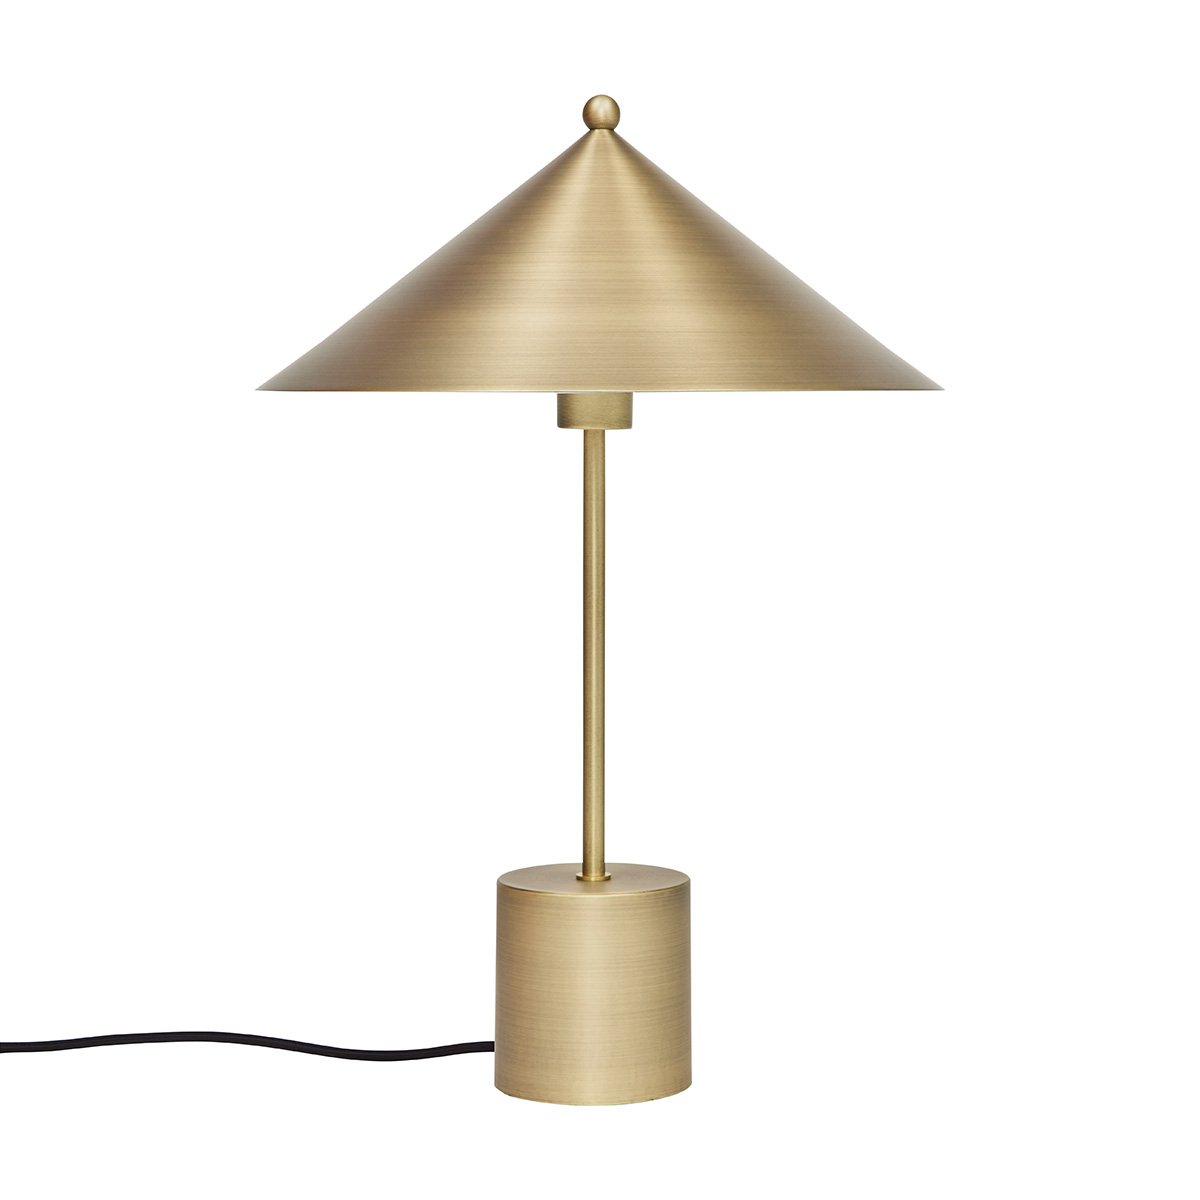 Lampe or en métal Ø35xH50cm